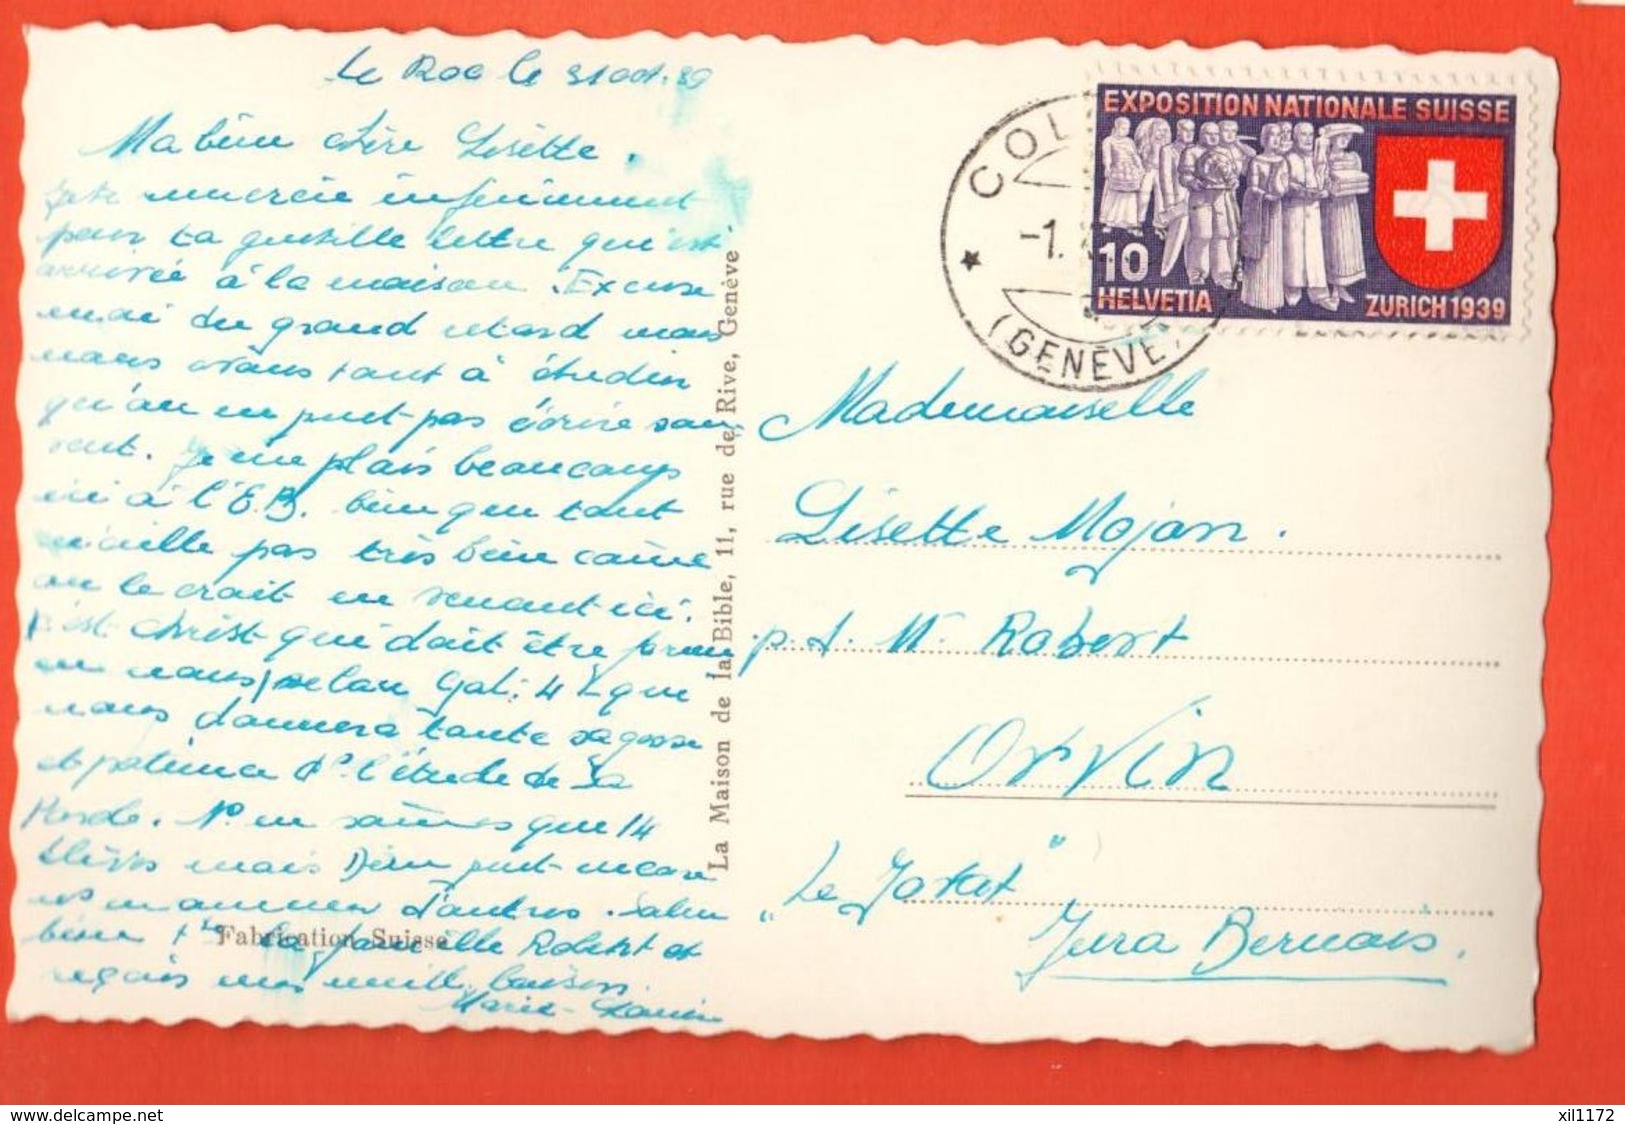 NI-02  Ecole Biblique De Genève. Cachet Cologny Genève Vers Orvin Jura Bernois. En 1939 Sur Timbre Exposition Nationale. - Cologny